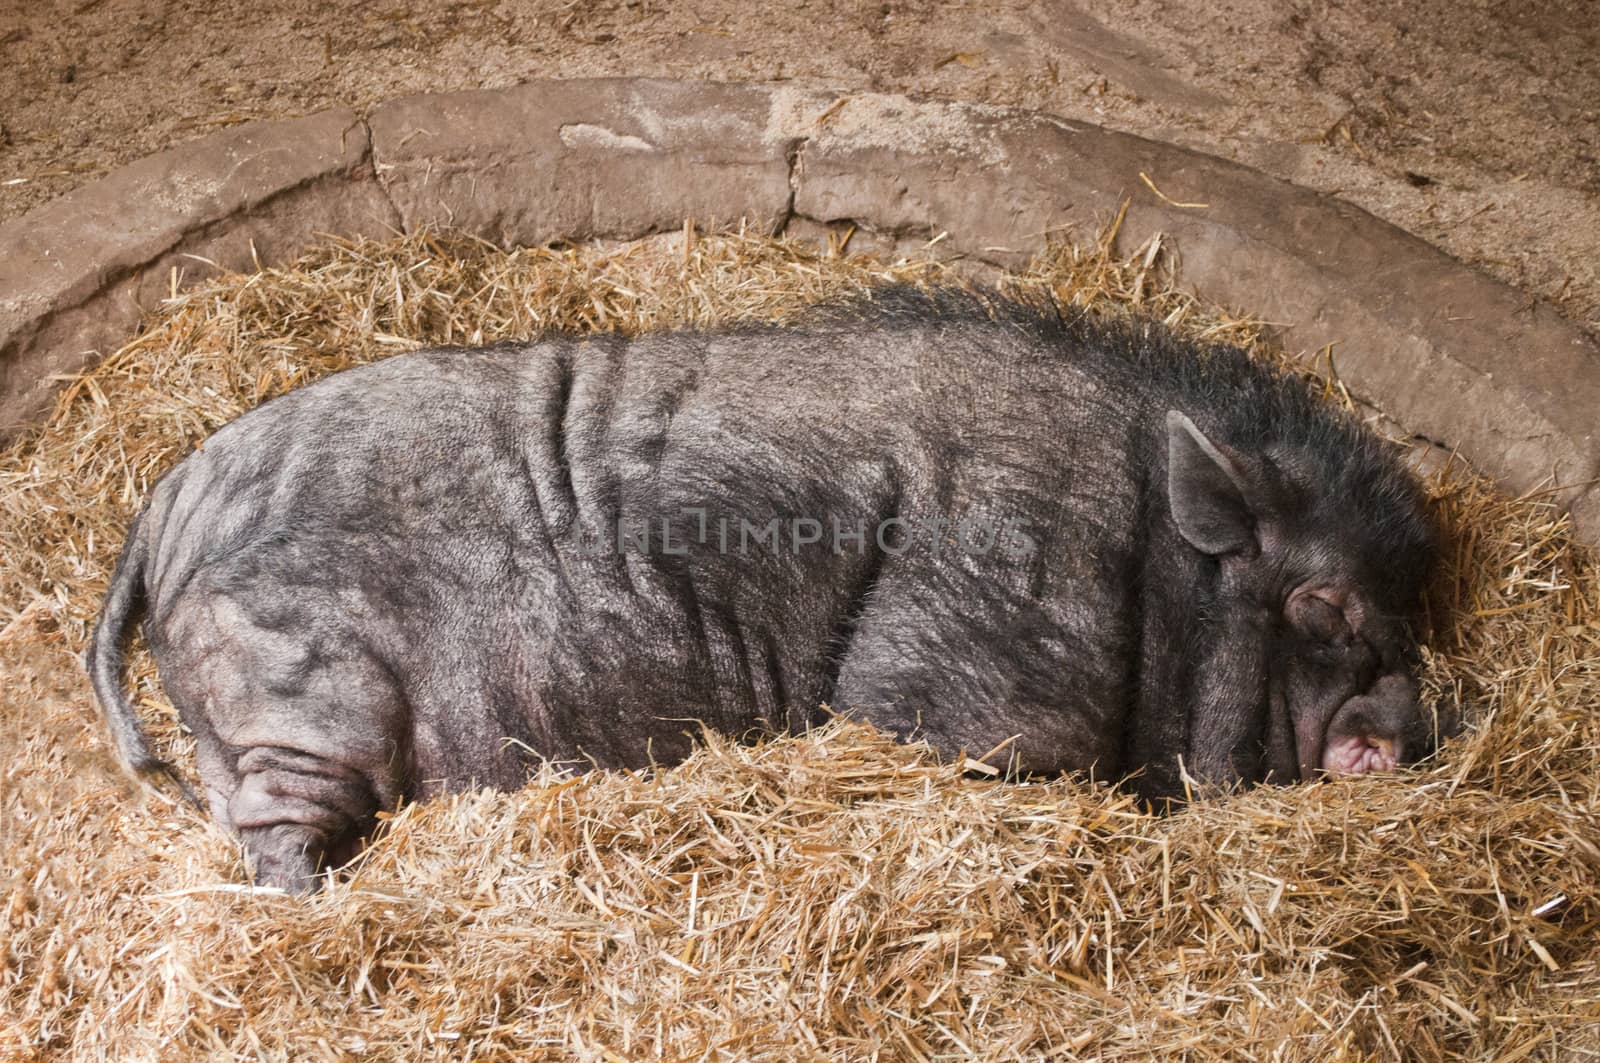 boar sleeping in the barn on the hay